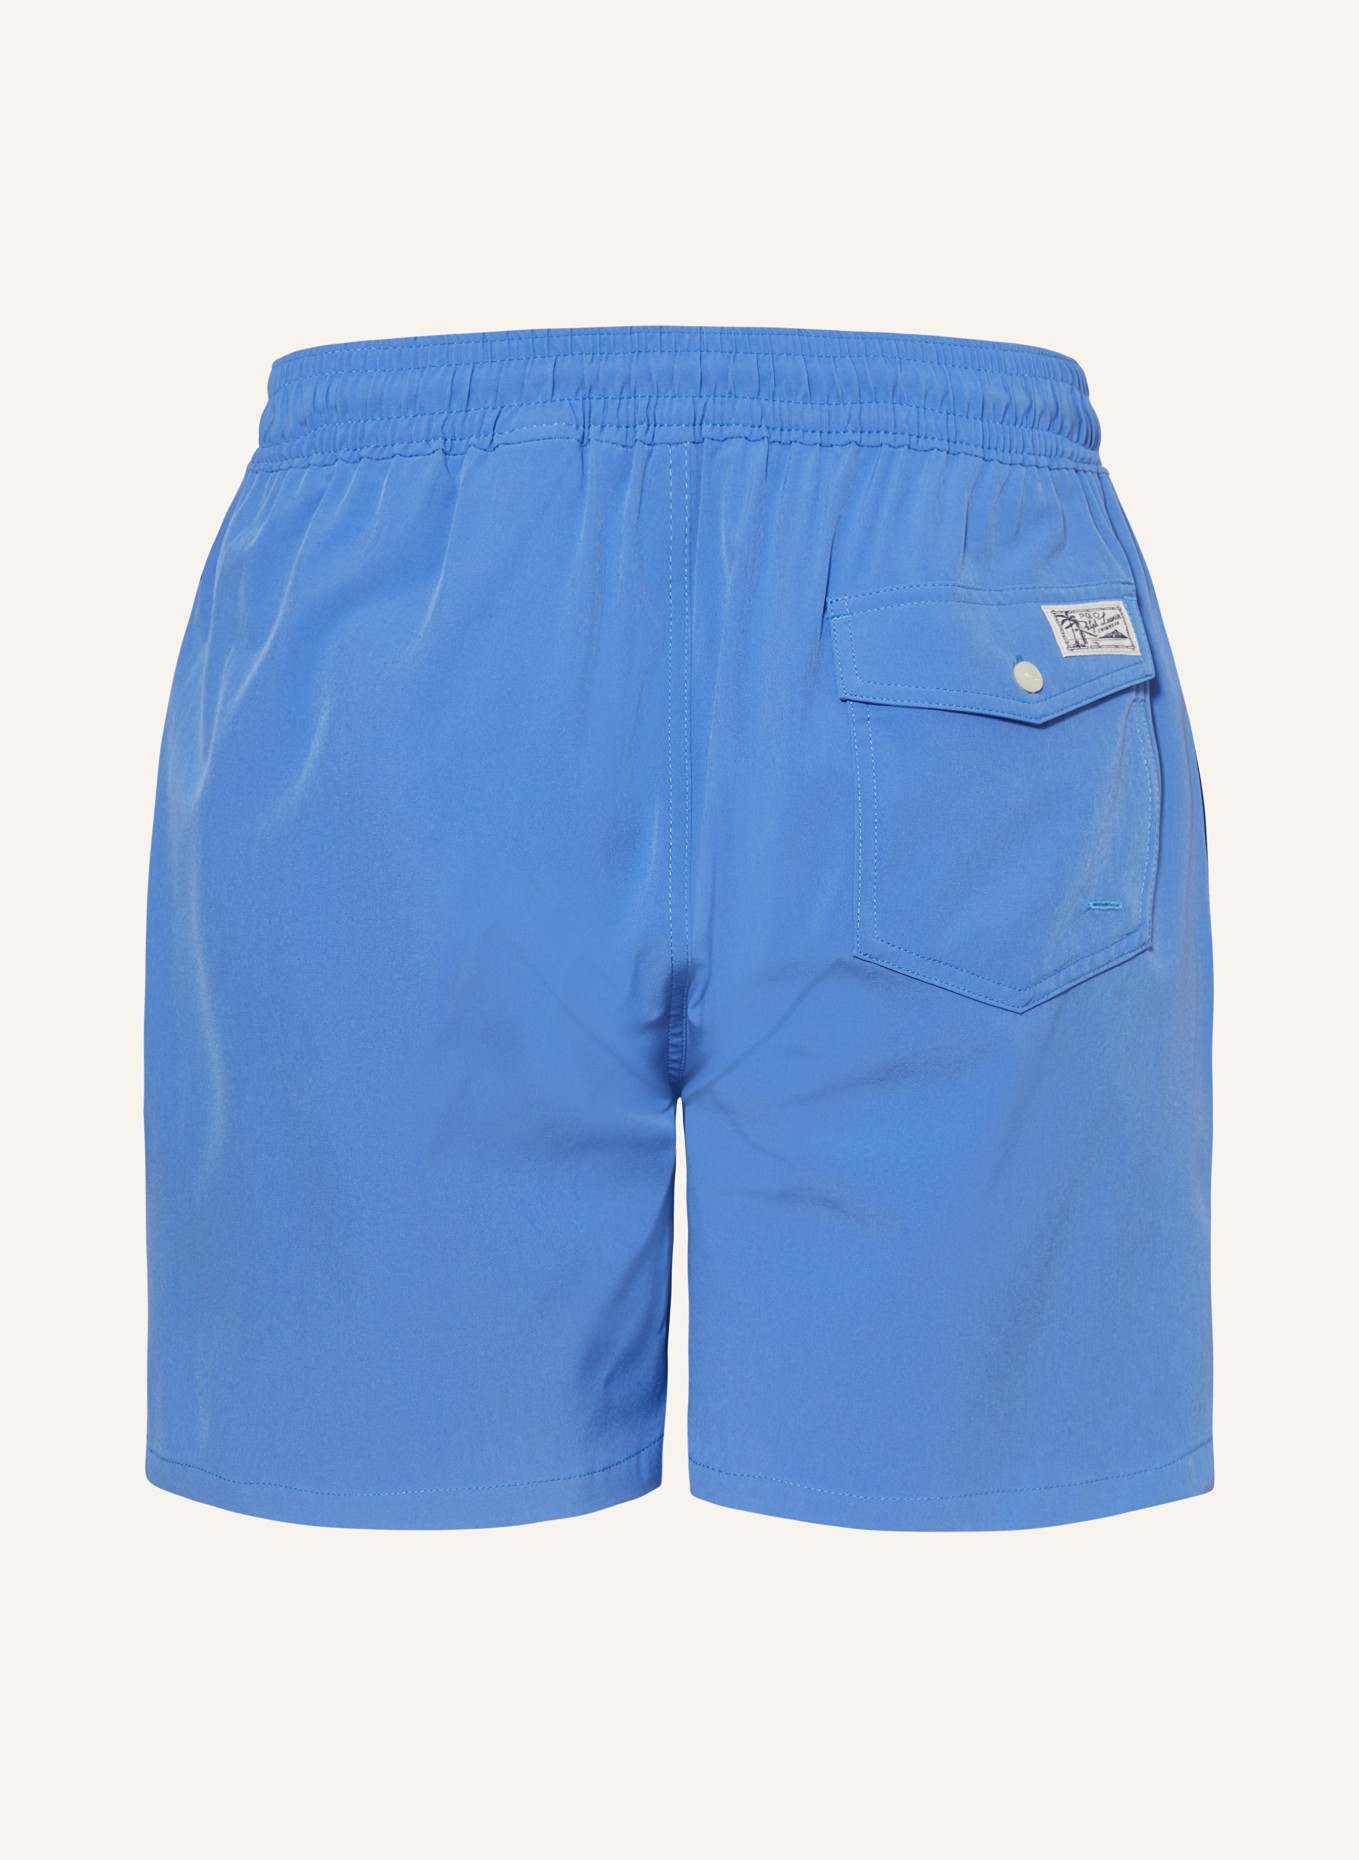 POLO RALPH LAUREN Swim shorts, Color: BLUE (Image 2)